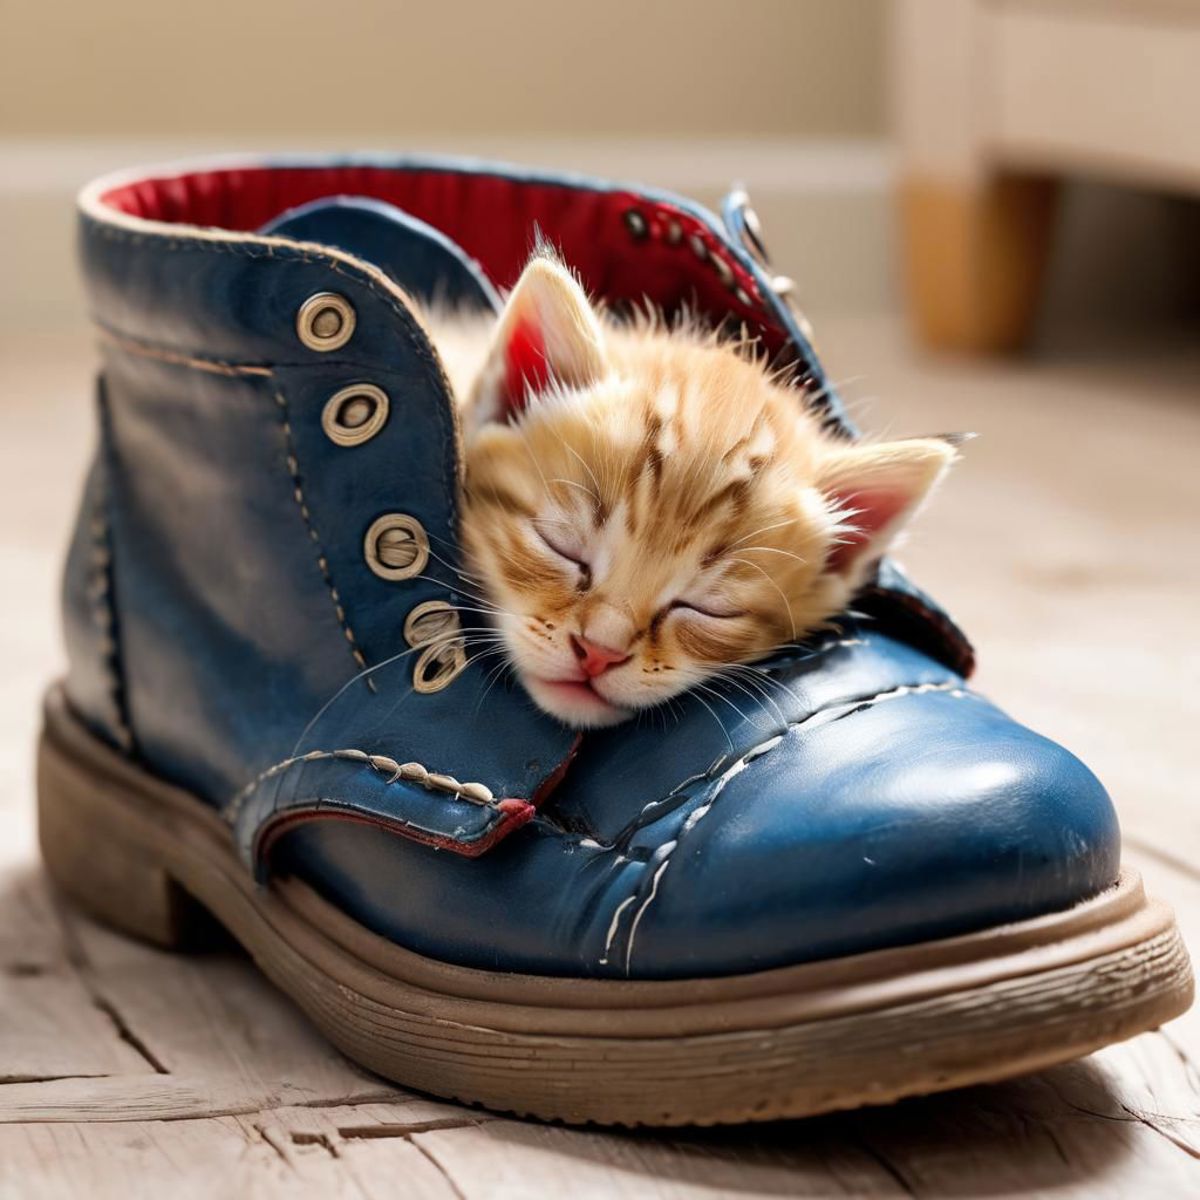 A small kitten sleeping inside a blue boot.